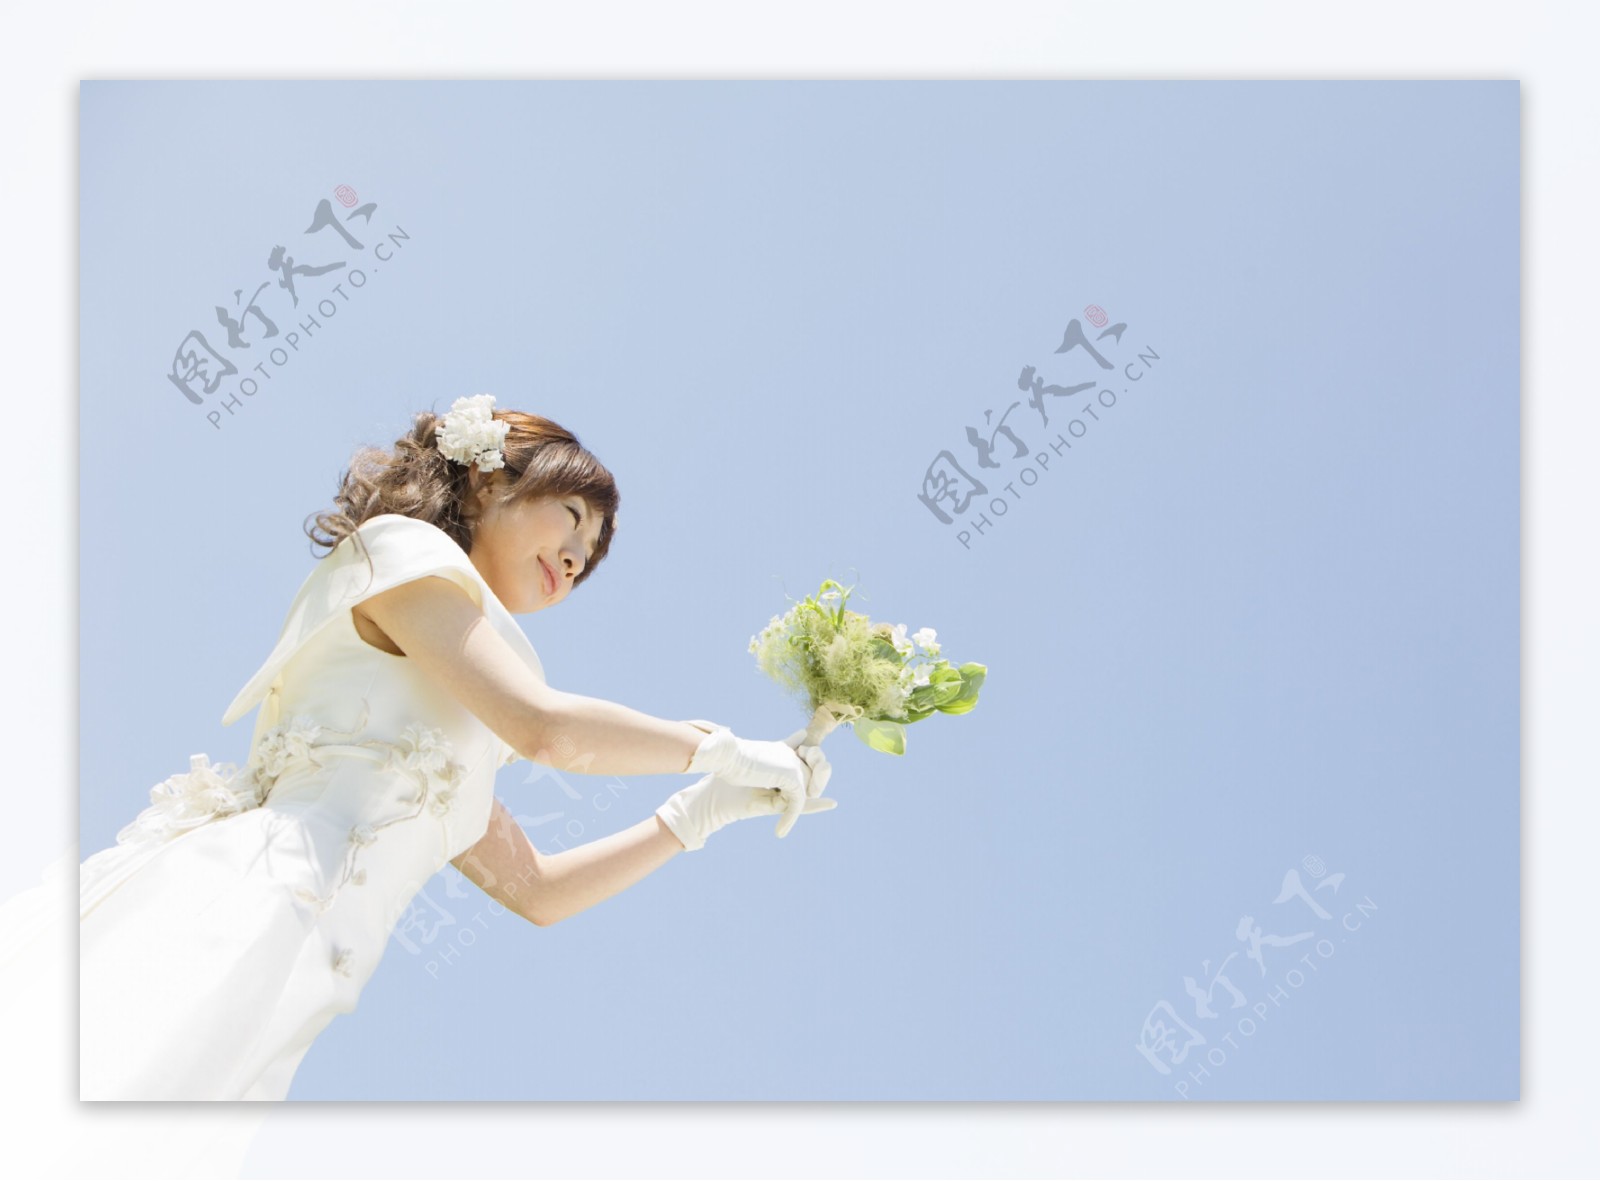 捧着鲜花的新娘照片图片